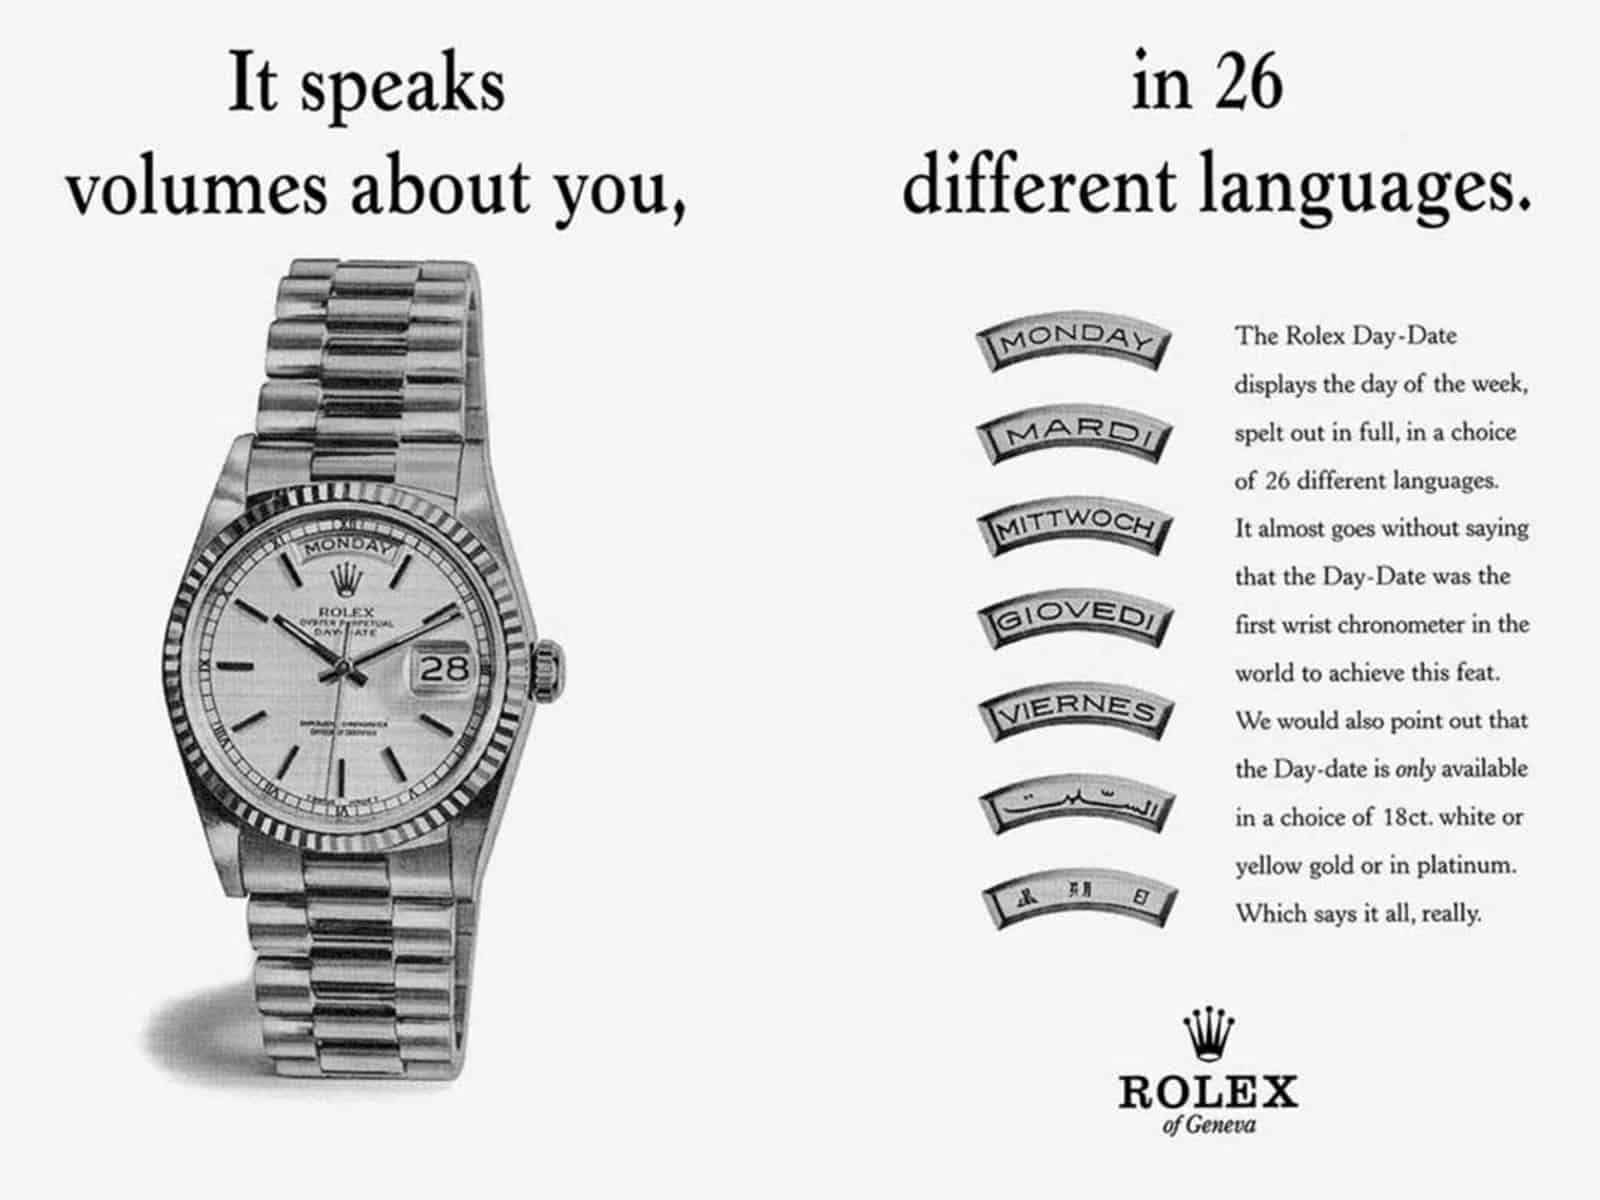 Anzeige Rolex Oyster Perpetual Day-Date 26 Sprachen